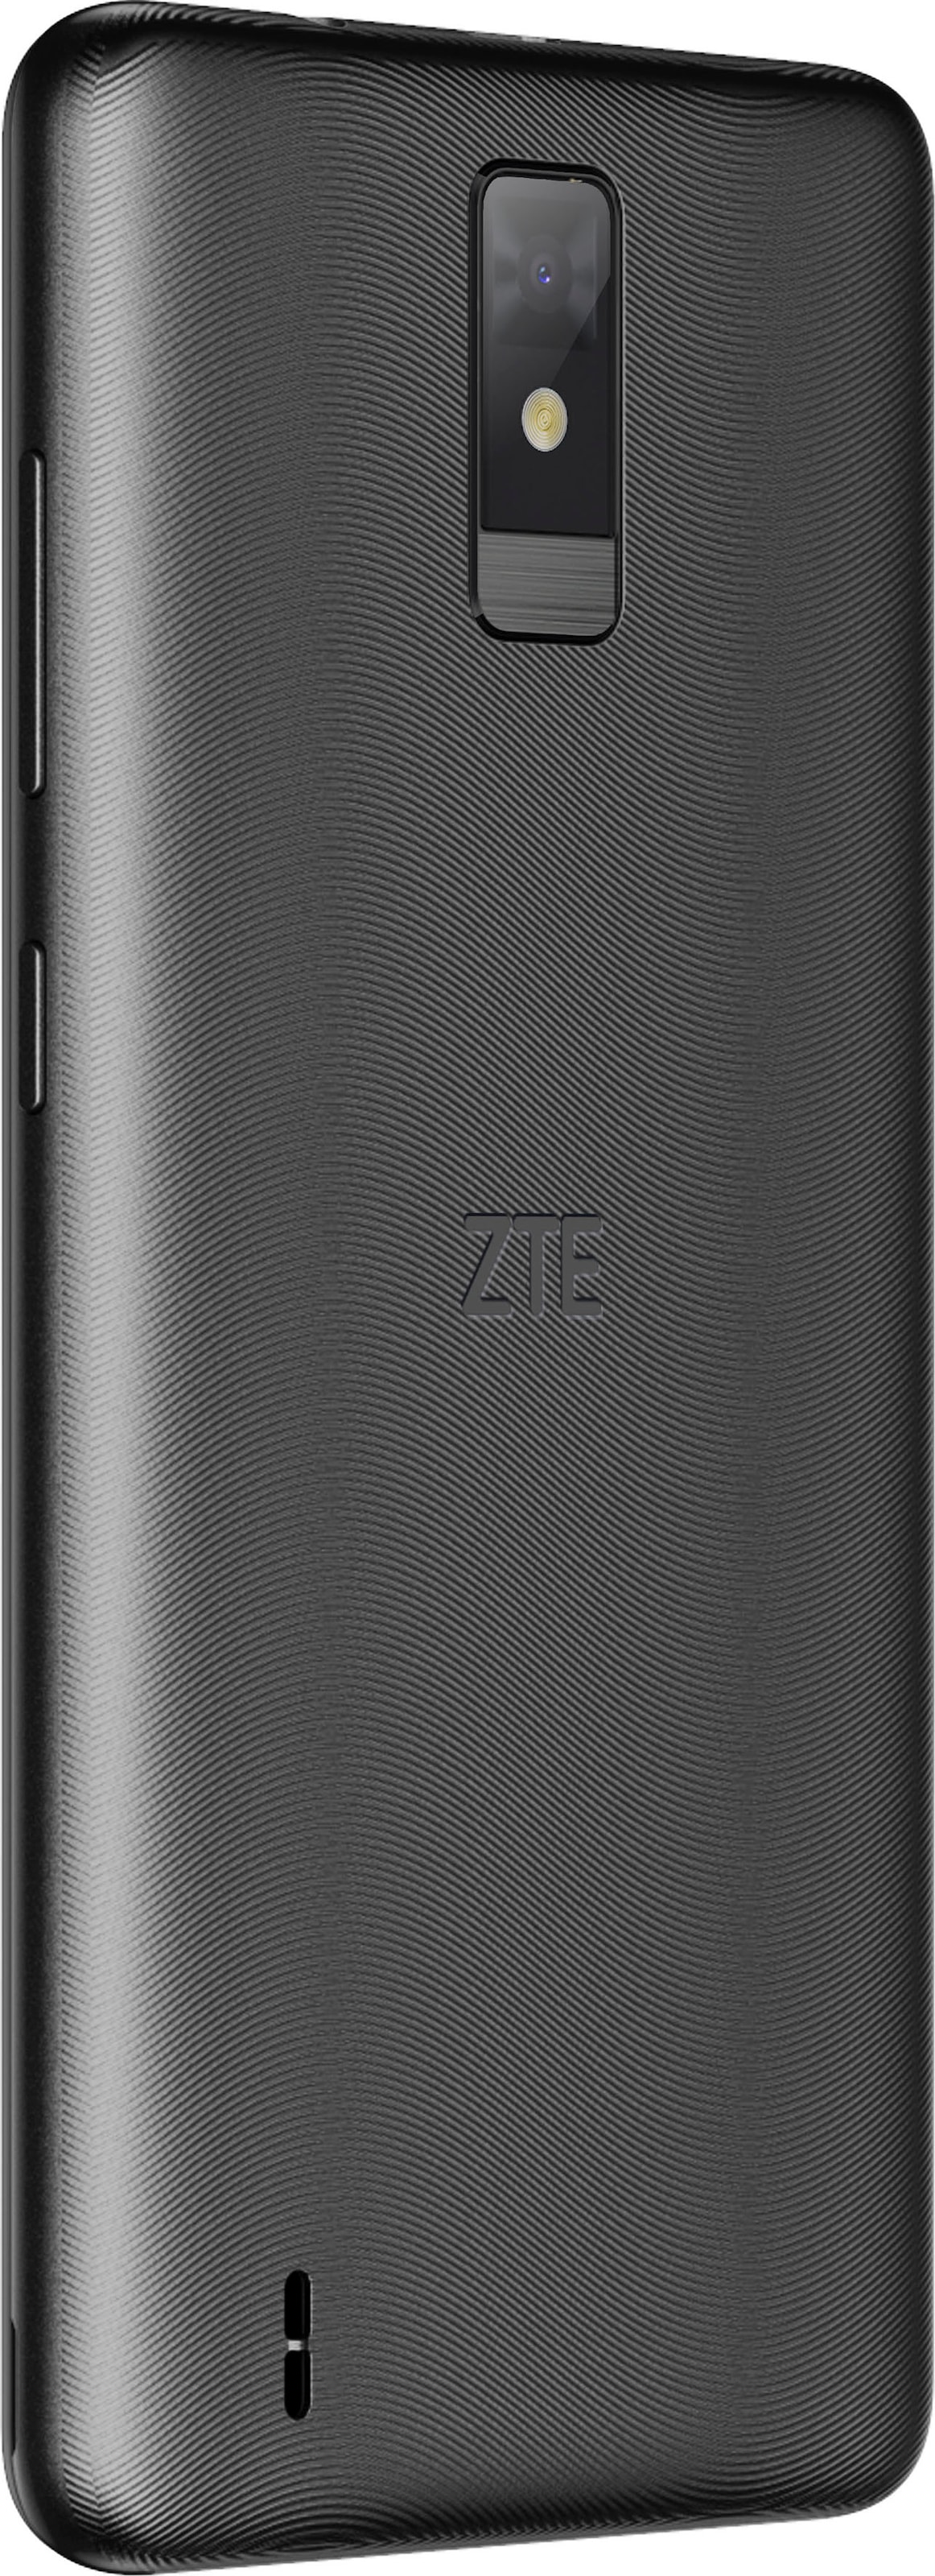 ZTE Smartphone »Blade A32«, schwarz, 13,84 cm/5,45 Zoll, 32 GB Speicherplatz, 5 MP Kamera